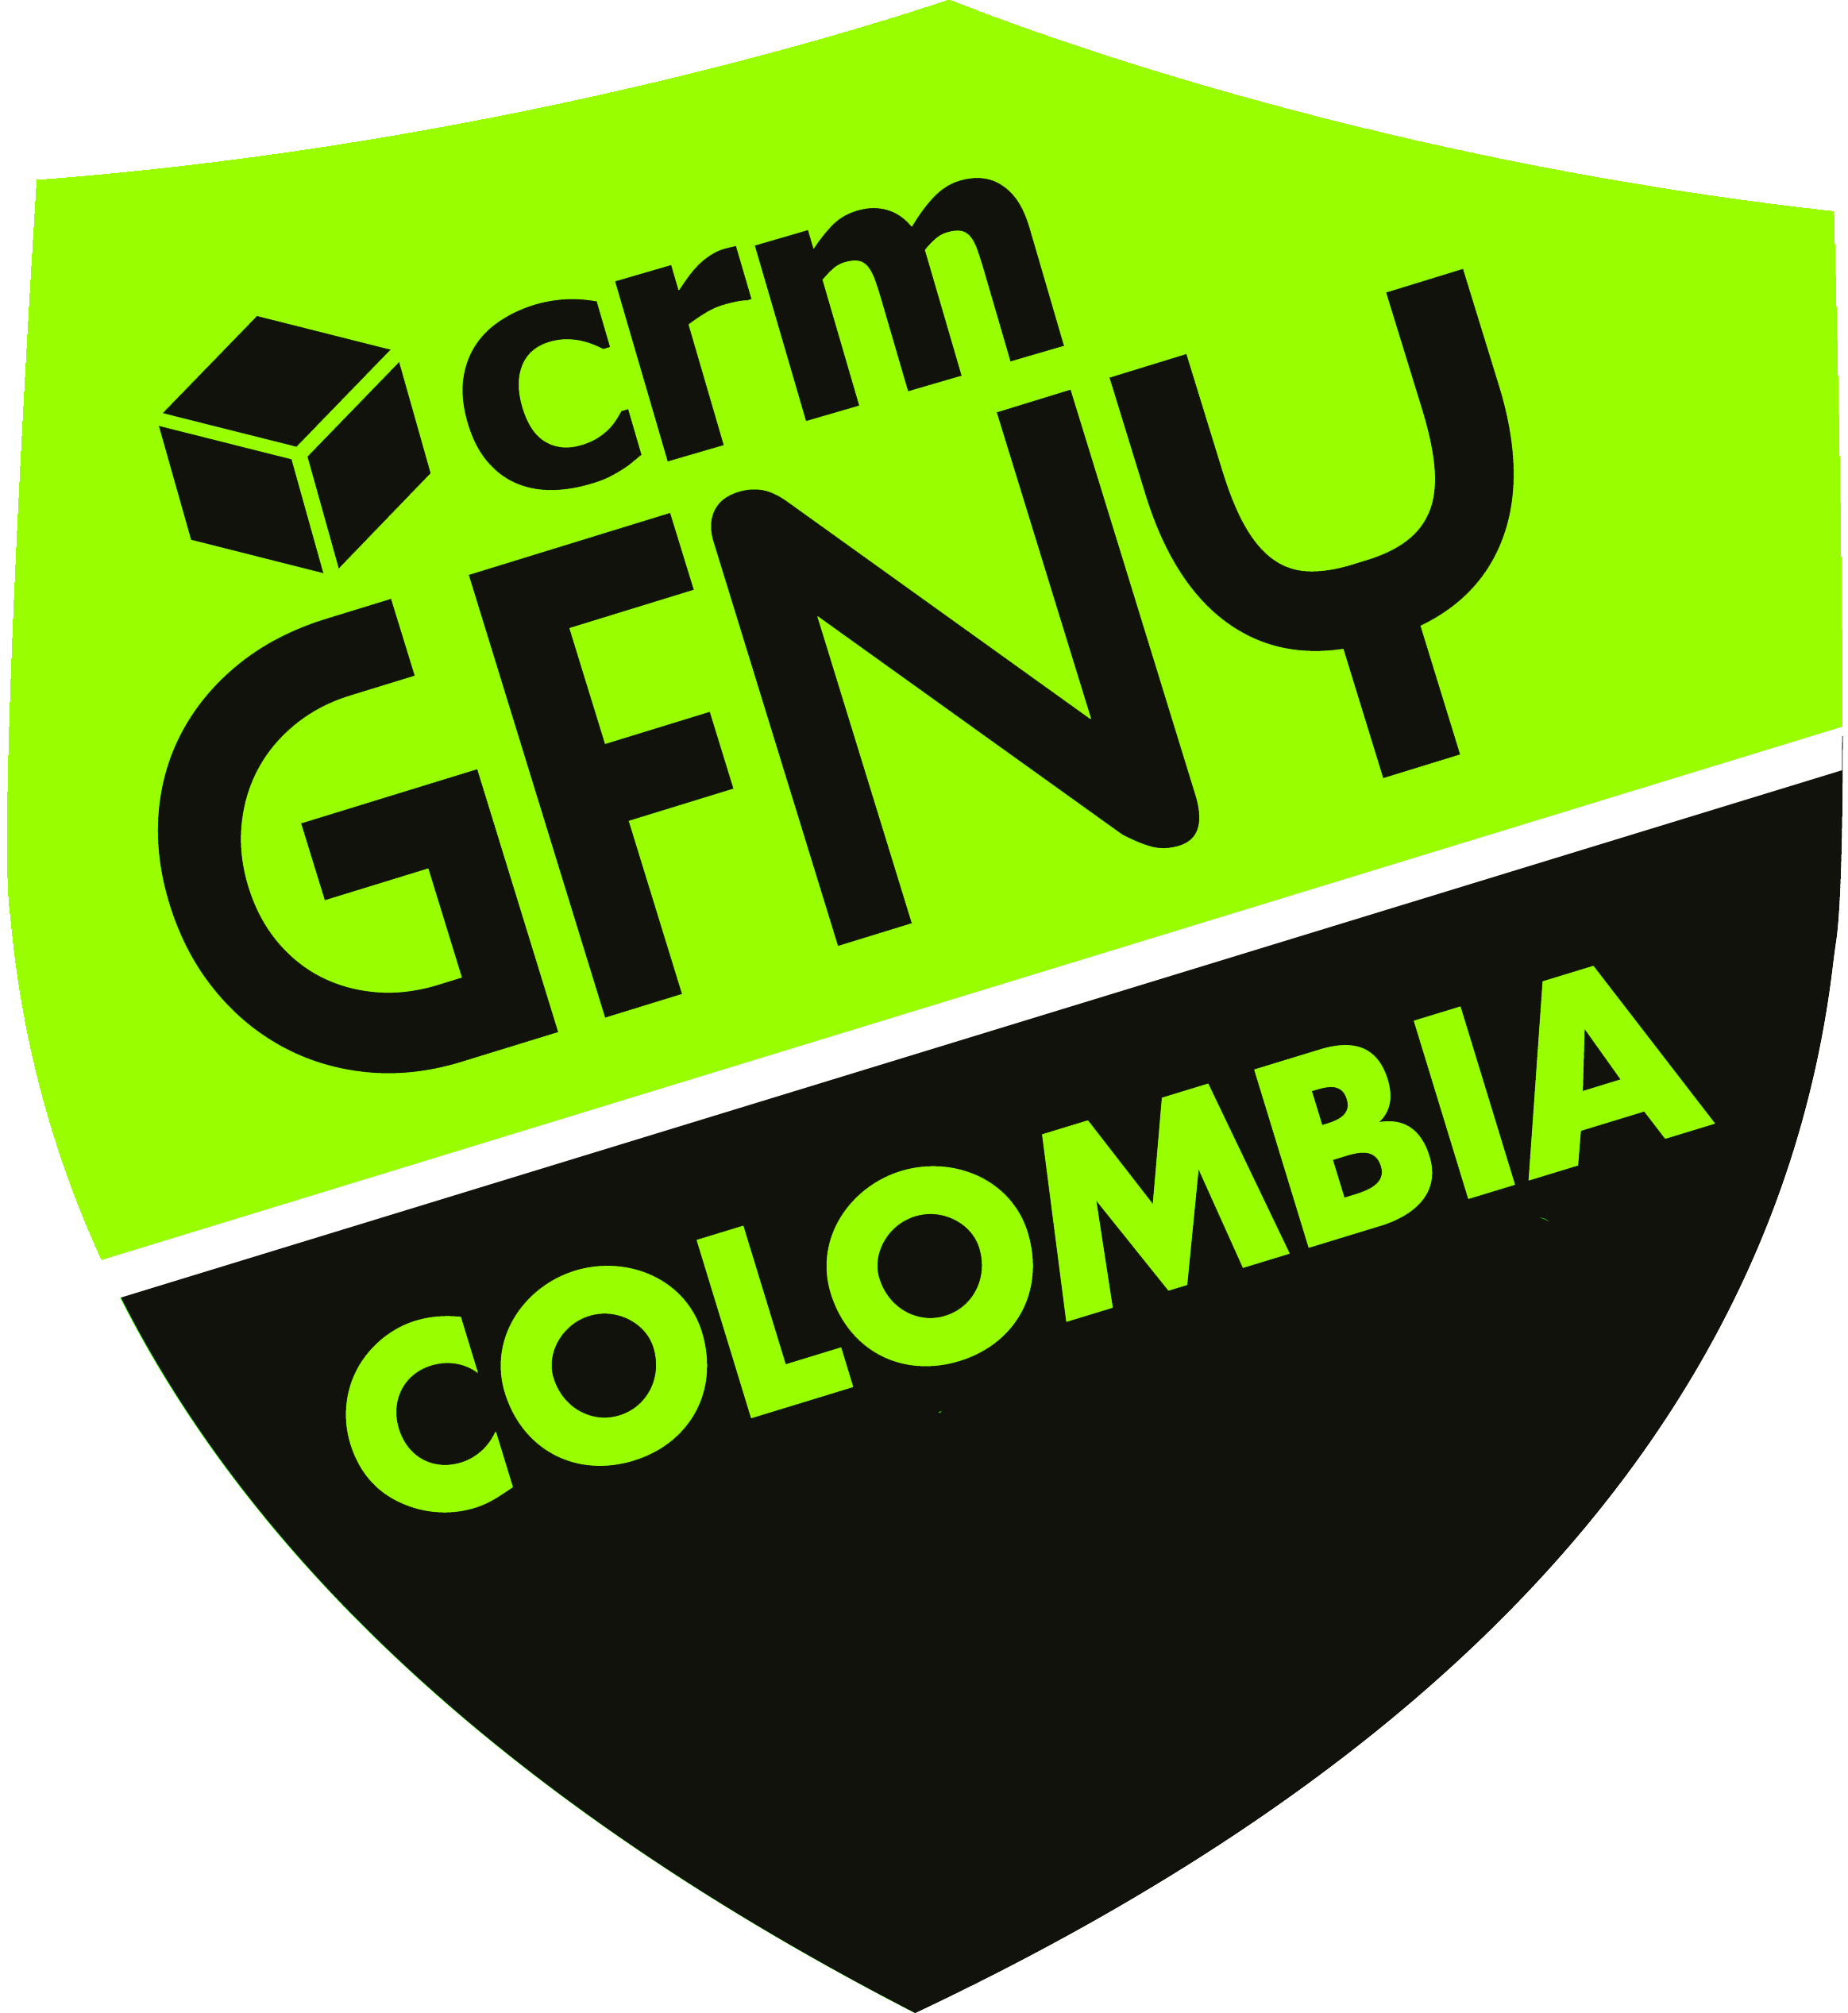 GFNY Colombia